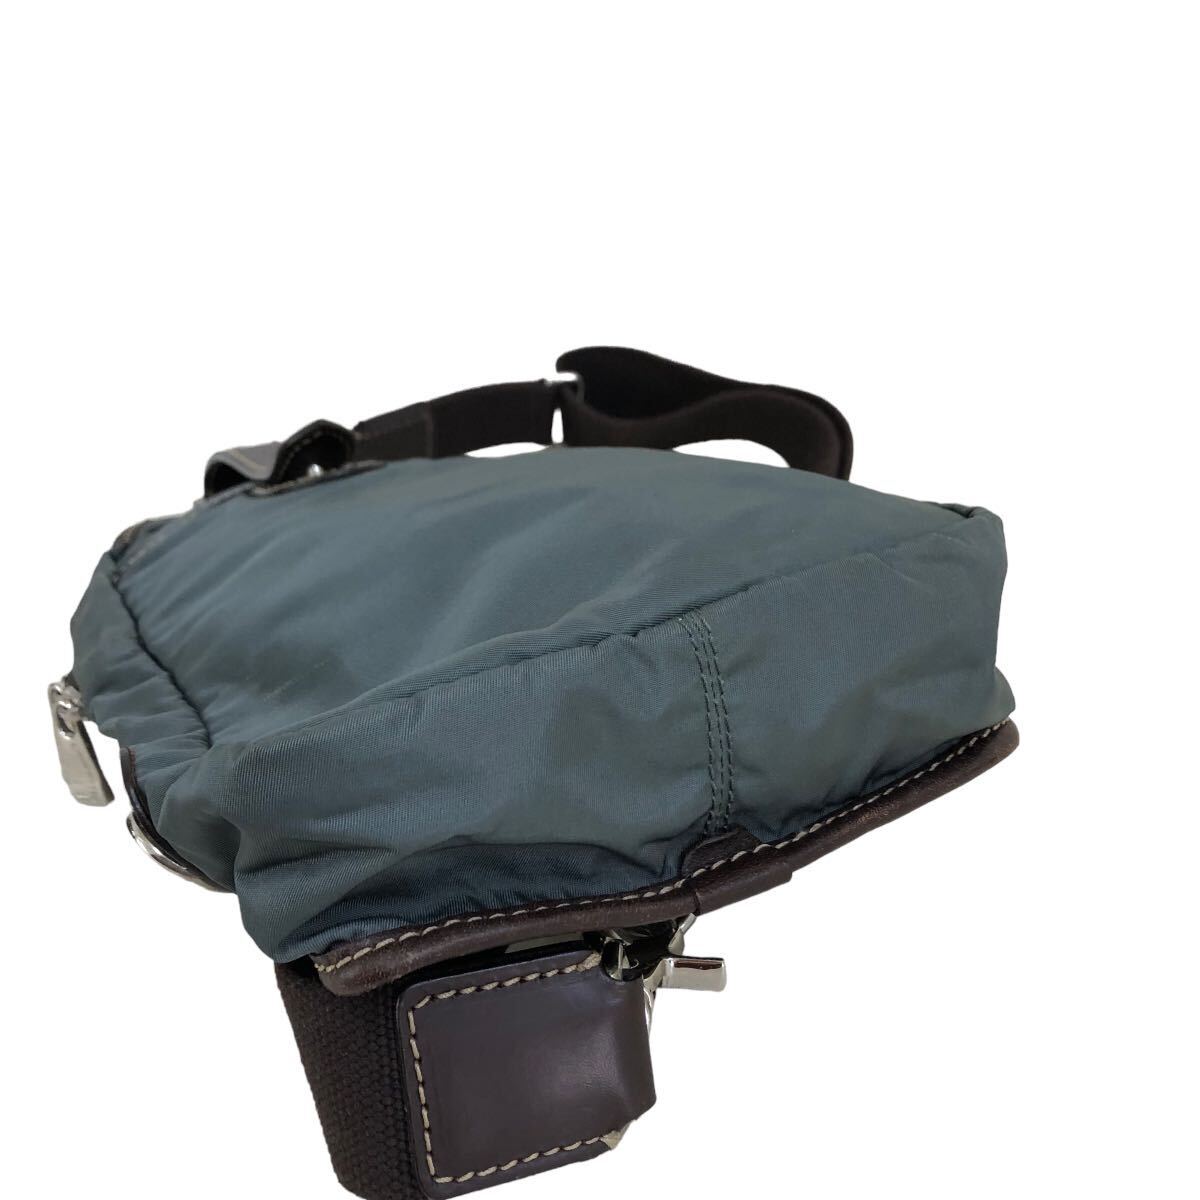 h040 イタリア製 STEFANO MANO ステファノマーノ ボディバッグ ワンショルダー バッグ グレー系 肩掛け 鞄 カバン bag メンズ 紳士_画像4